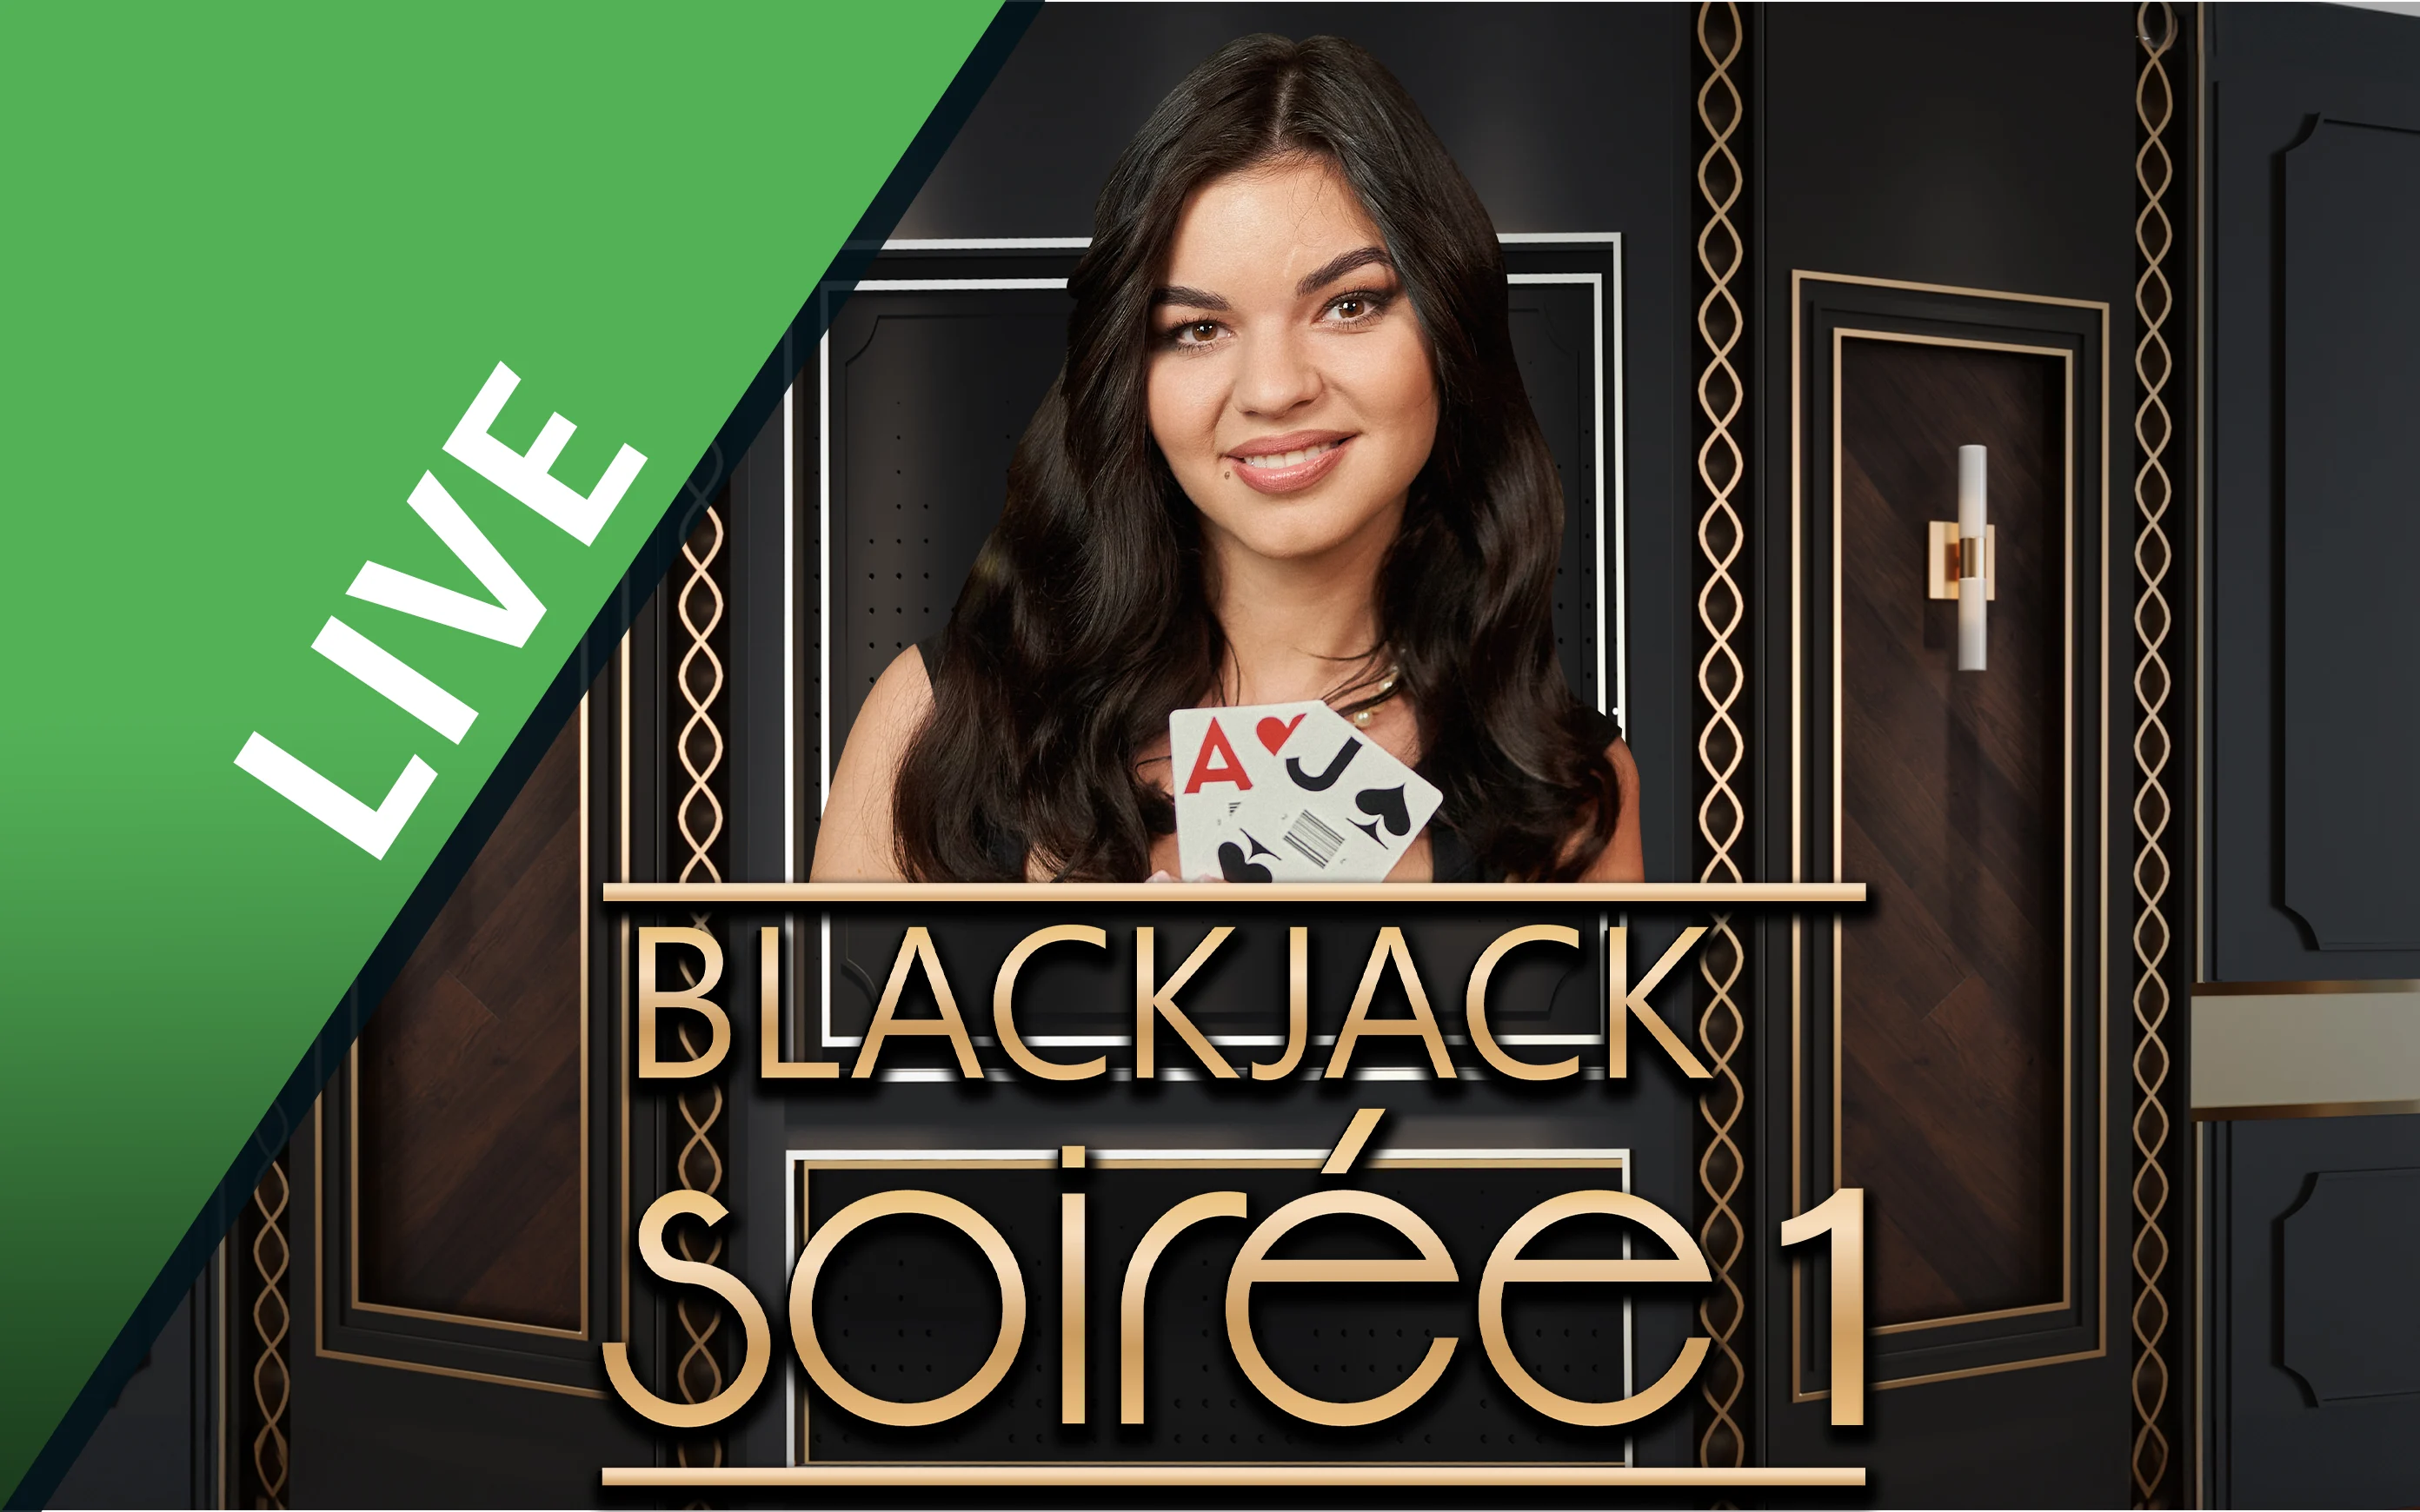 Starcasino.be online casino üzerinden Blackjack Soirée 1 oynayın